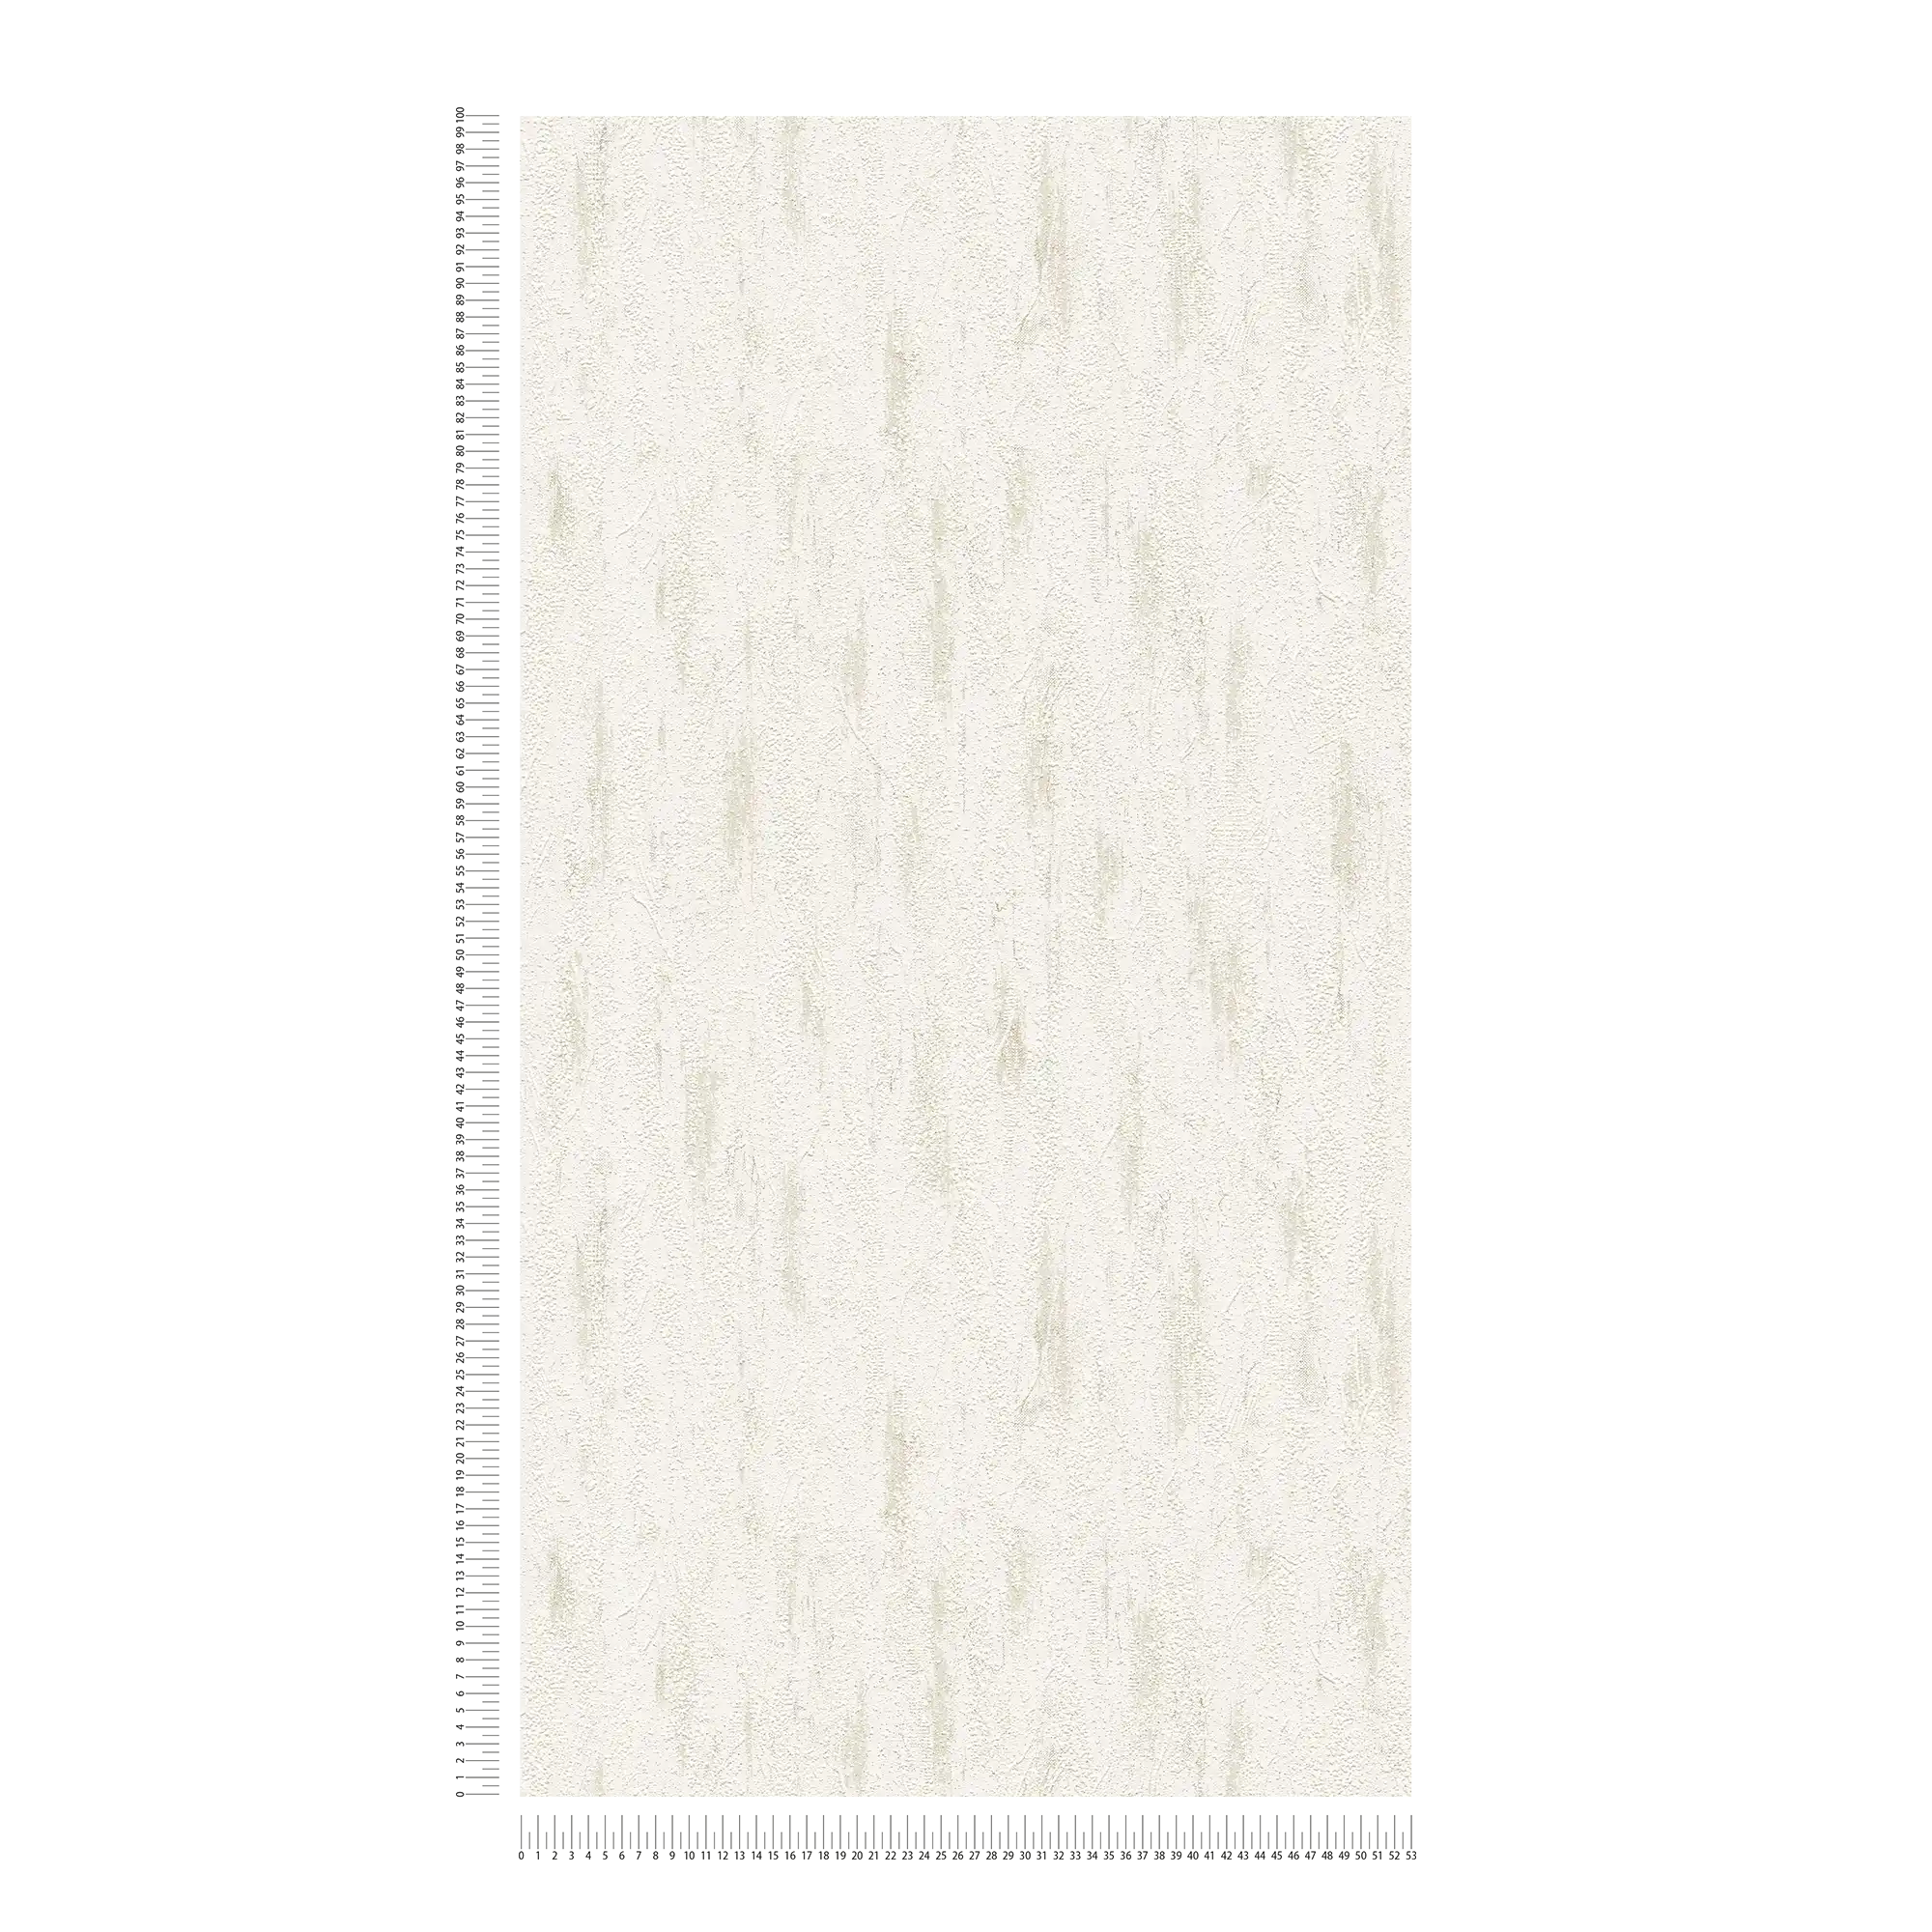             papier peint en papier imitation plâtre avec décor texturé & chiné - gris, crème
        